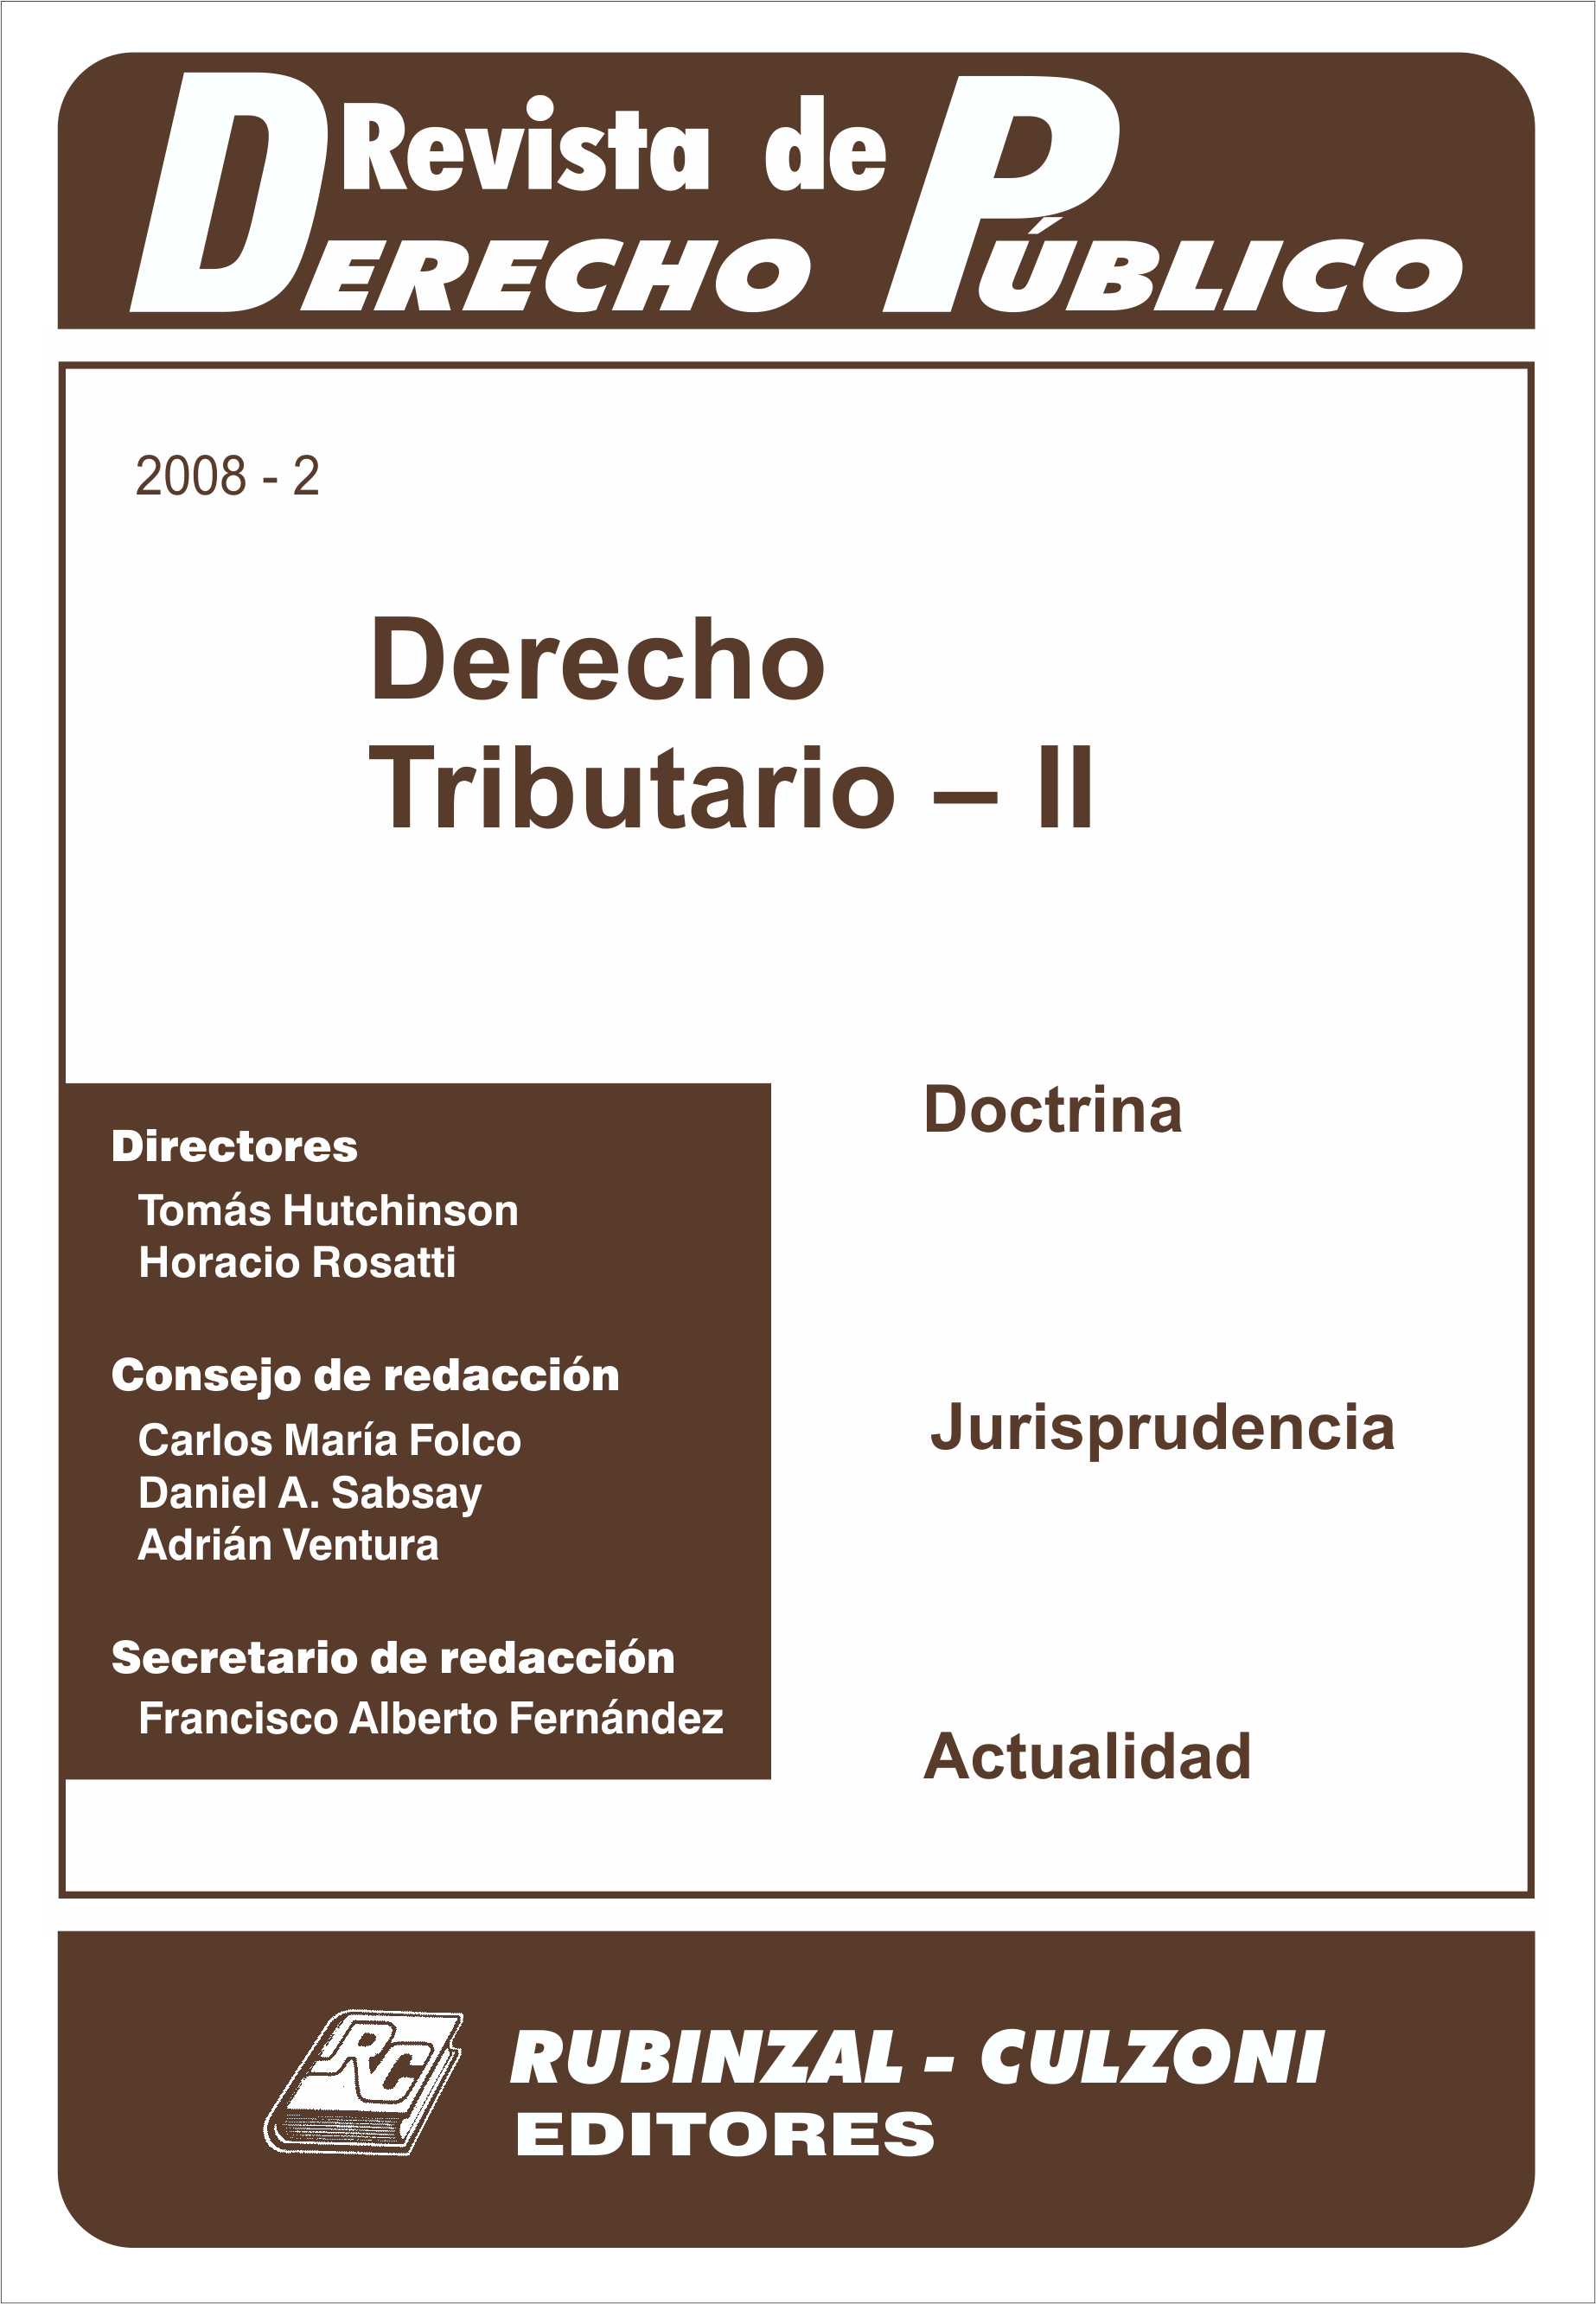 Revista de Derecho Público - Derecho Tributario - II.